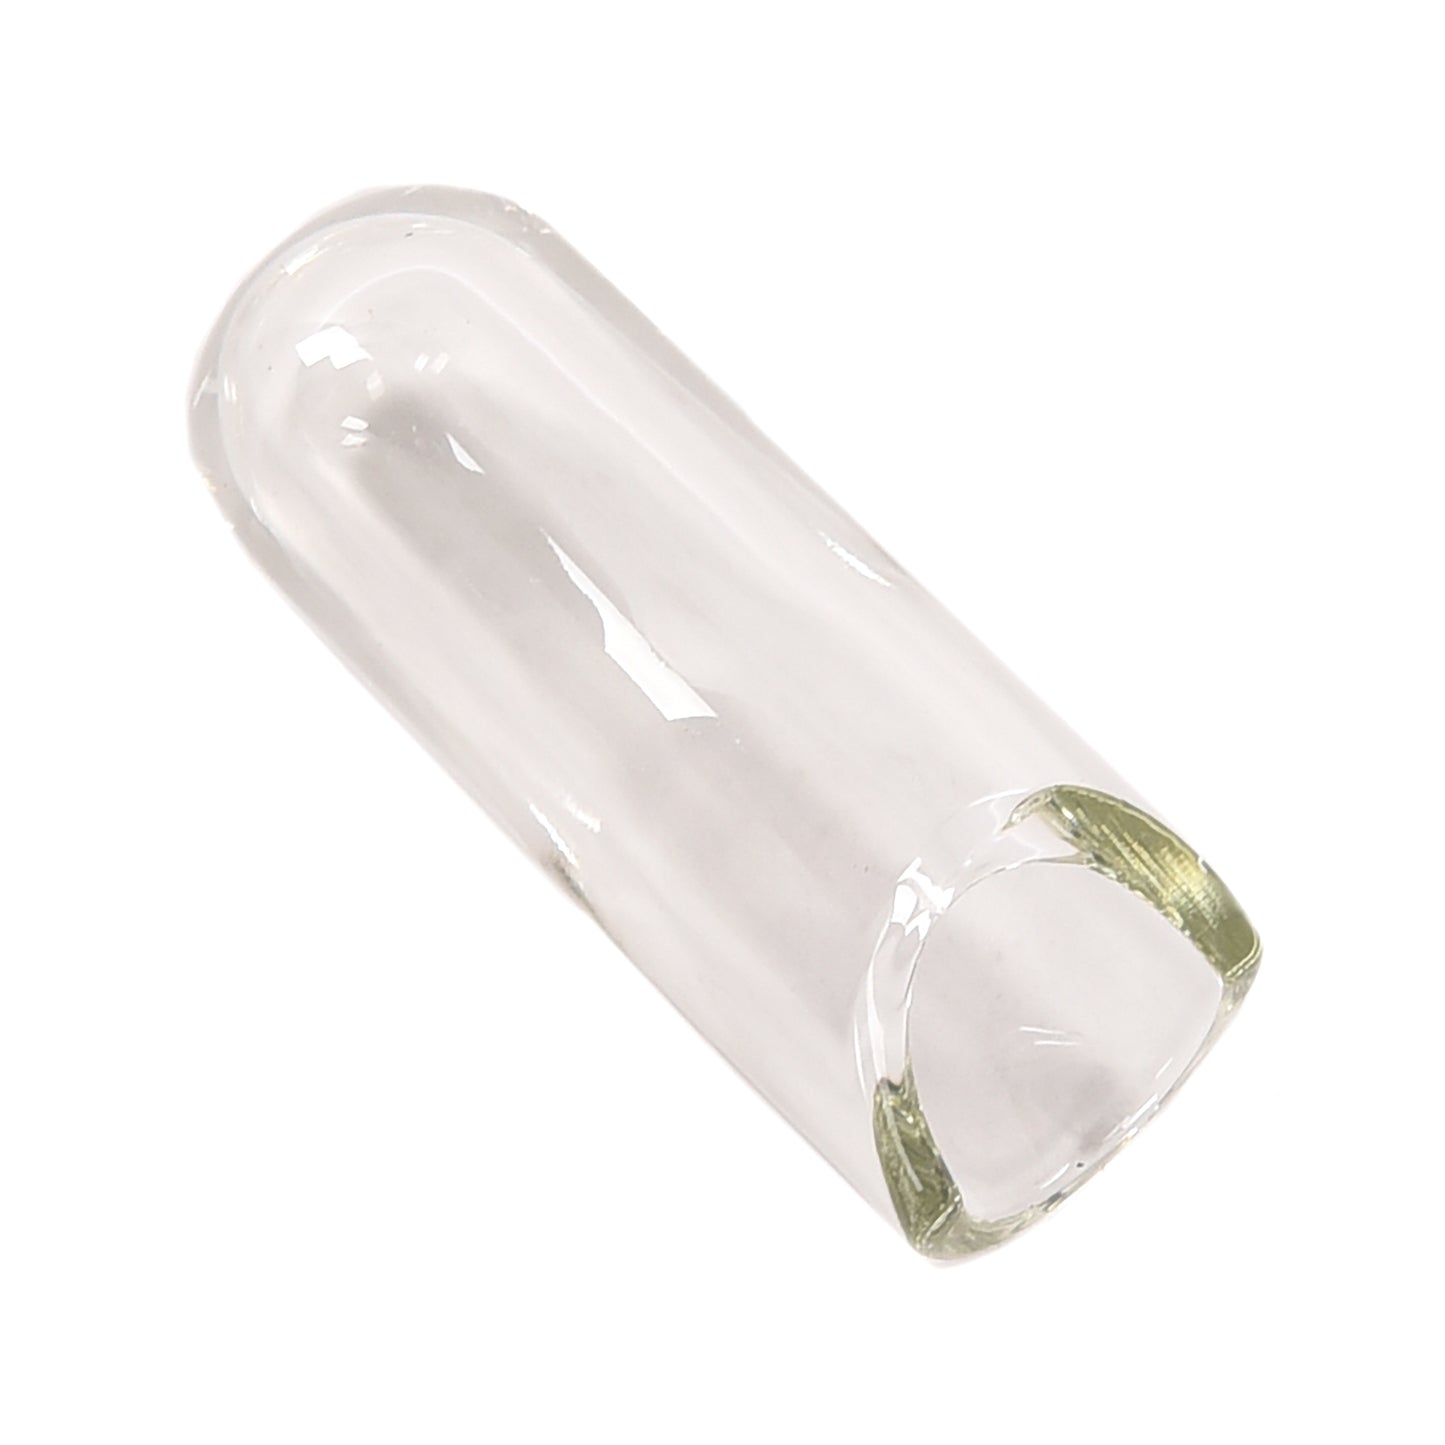 The Rock Slide Balltip Medium 19.5mm Internal Diameter x 71mm Length Clear Glass